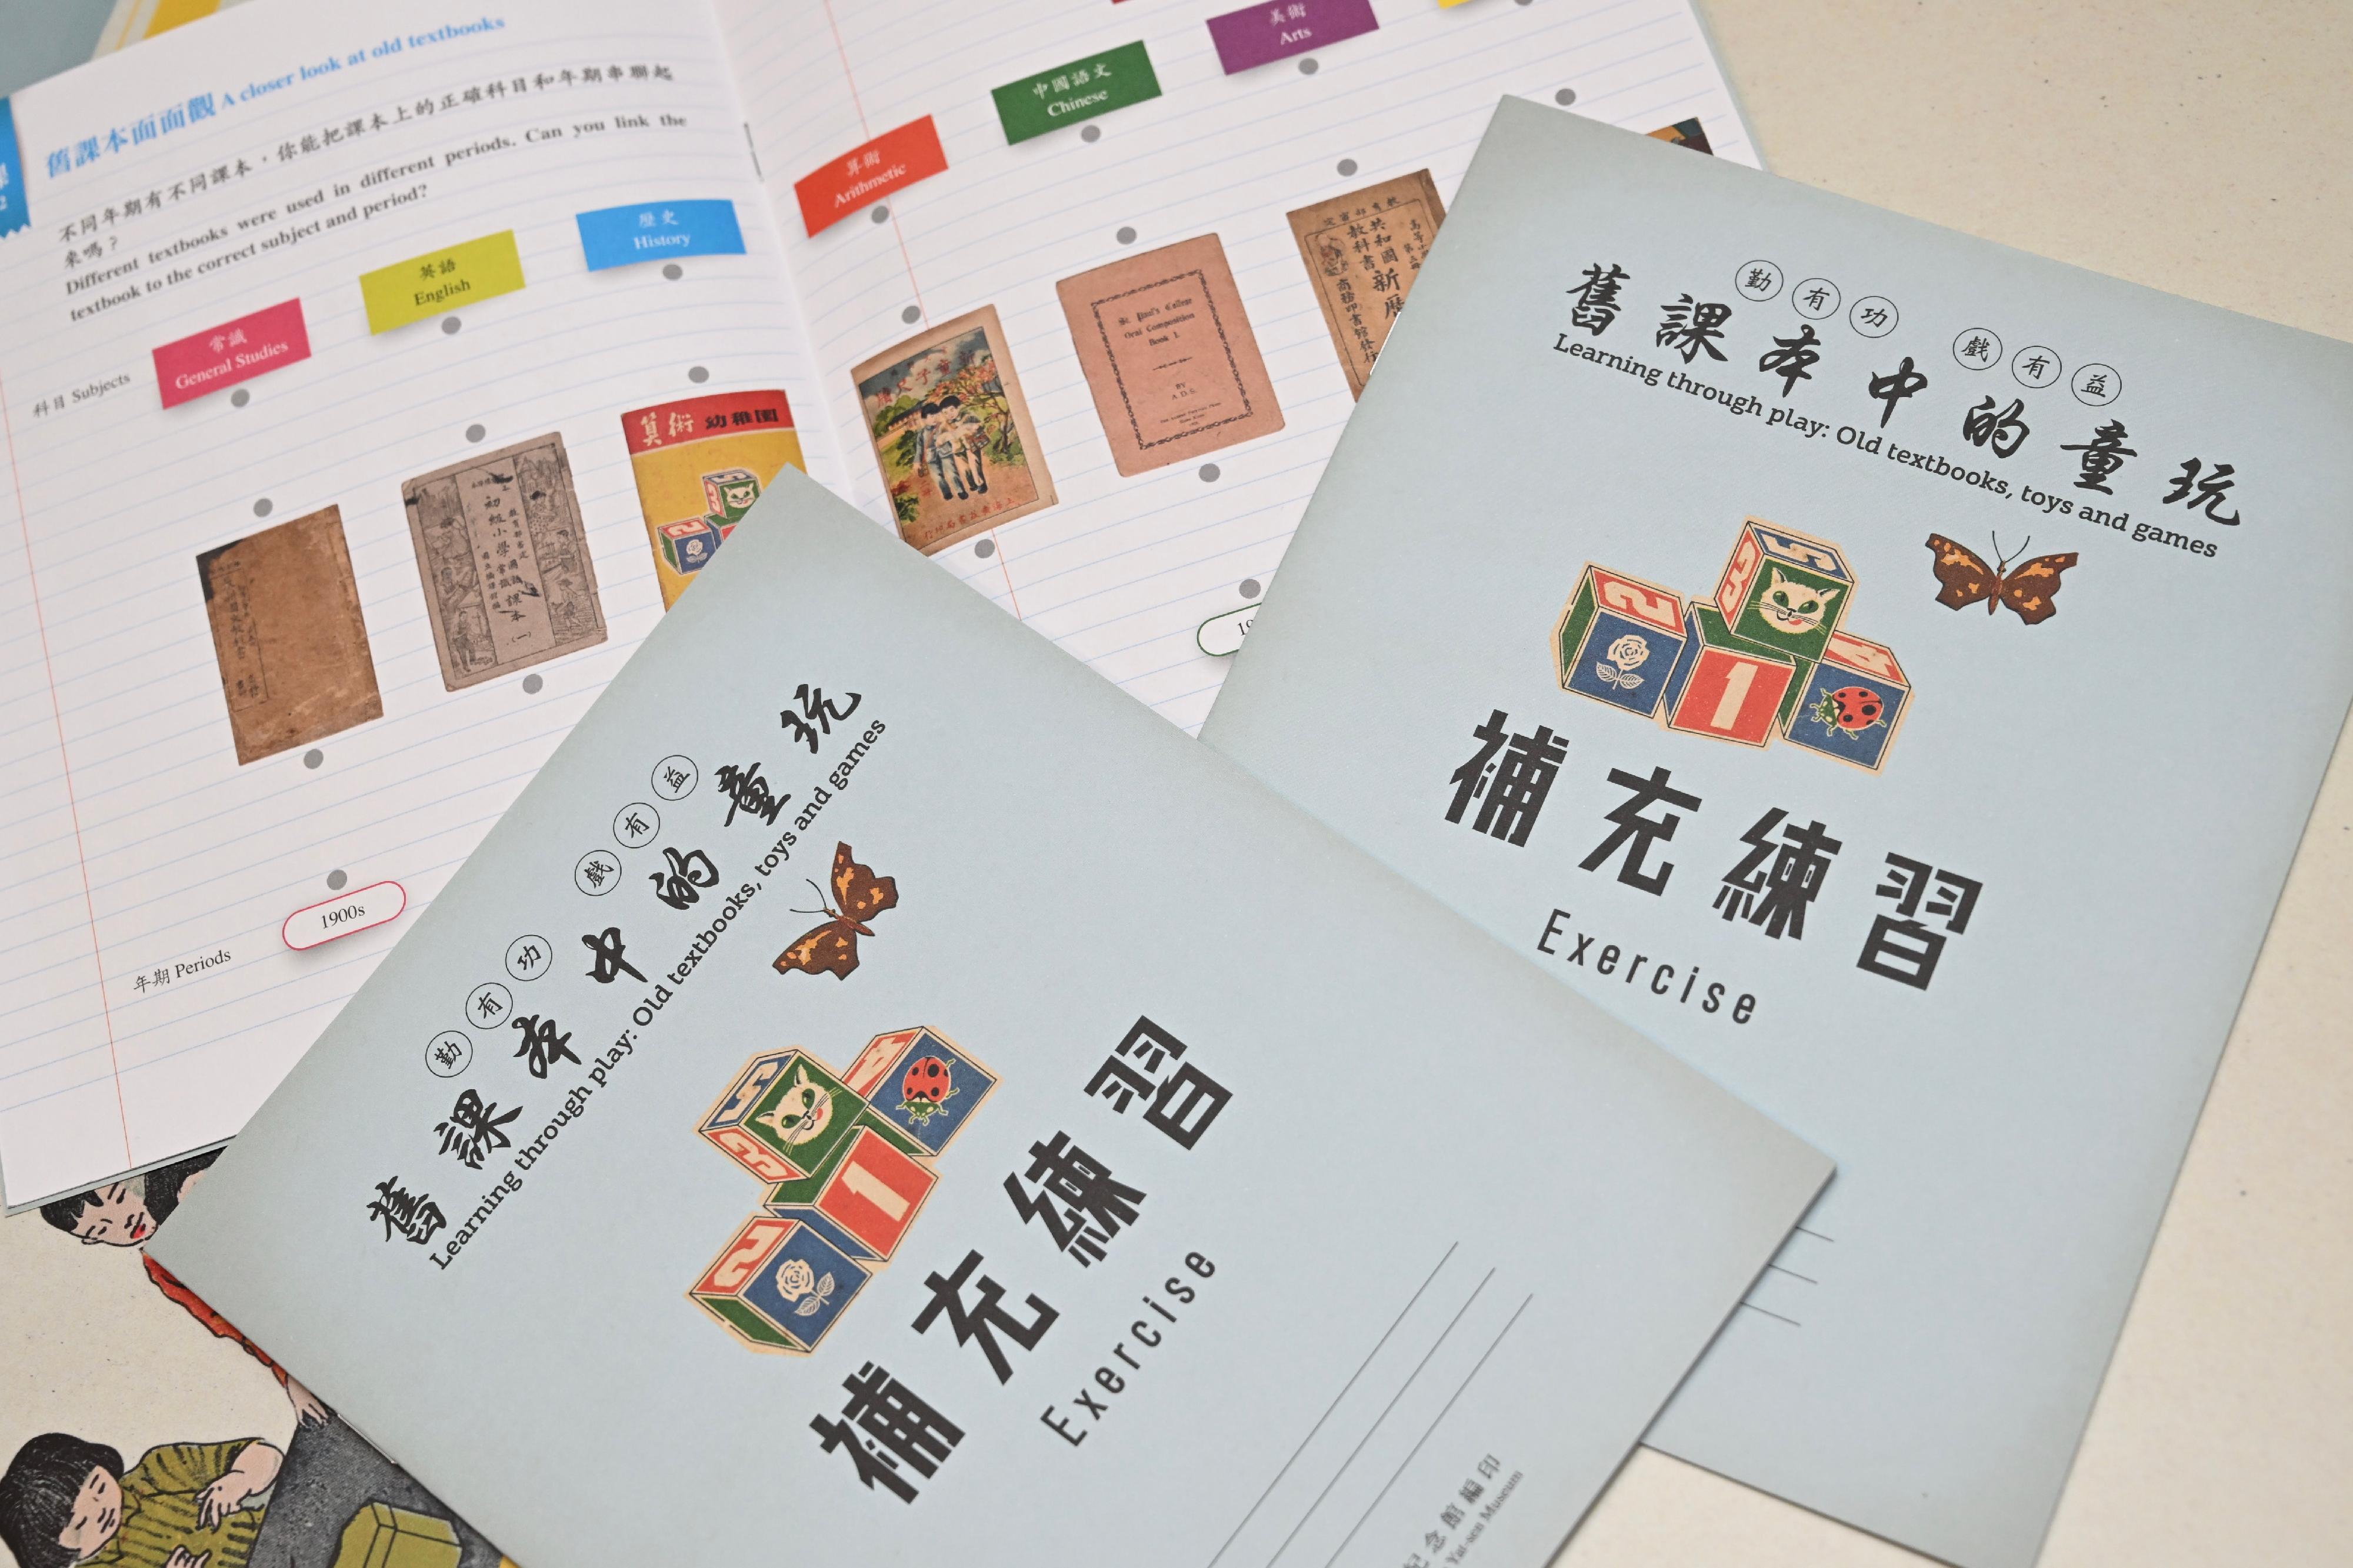 孙中山纪念馆明日（十二月二十二日）推出新专题展览「勤有功　戏有益：旧课本中的童玩」。图示展览内的教育小册子。




